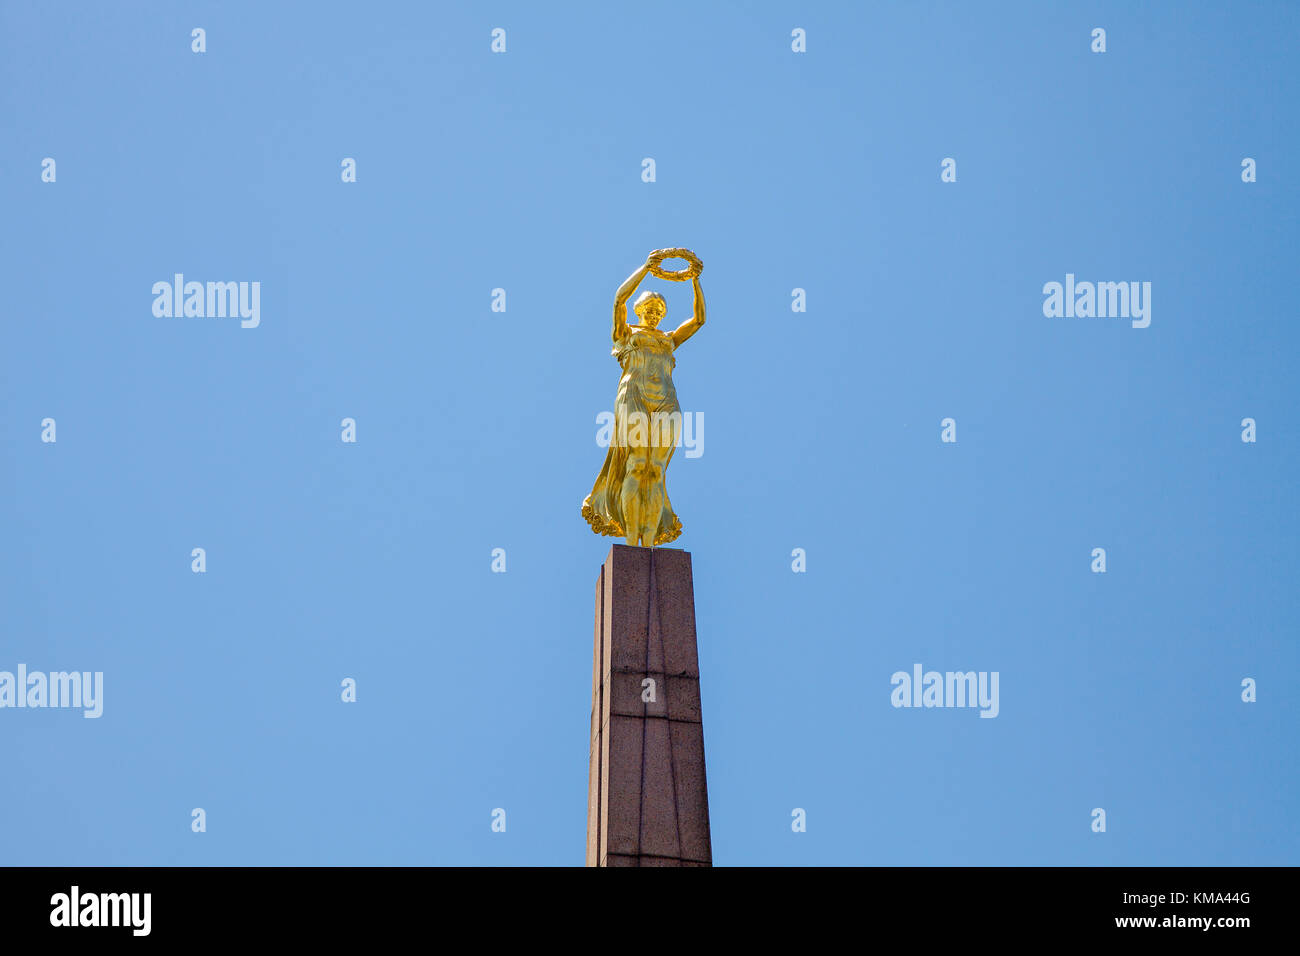 Stein Obelisk mit der goldenen Frau, gelle Fra, Denkmal an der Place de la Verfassung, der Stadt Luxemburg, Luxemburg, Europa Stockfoto